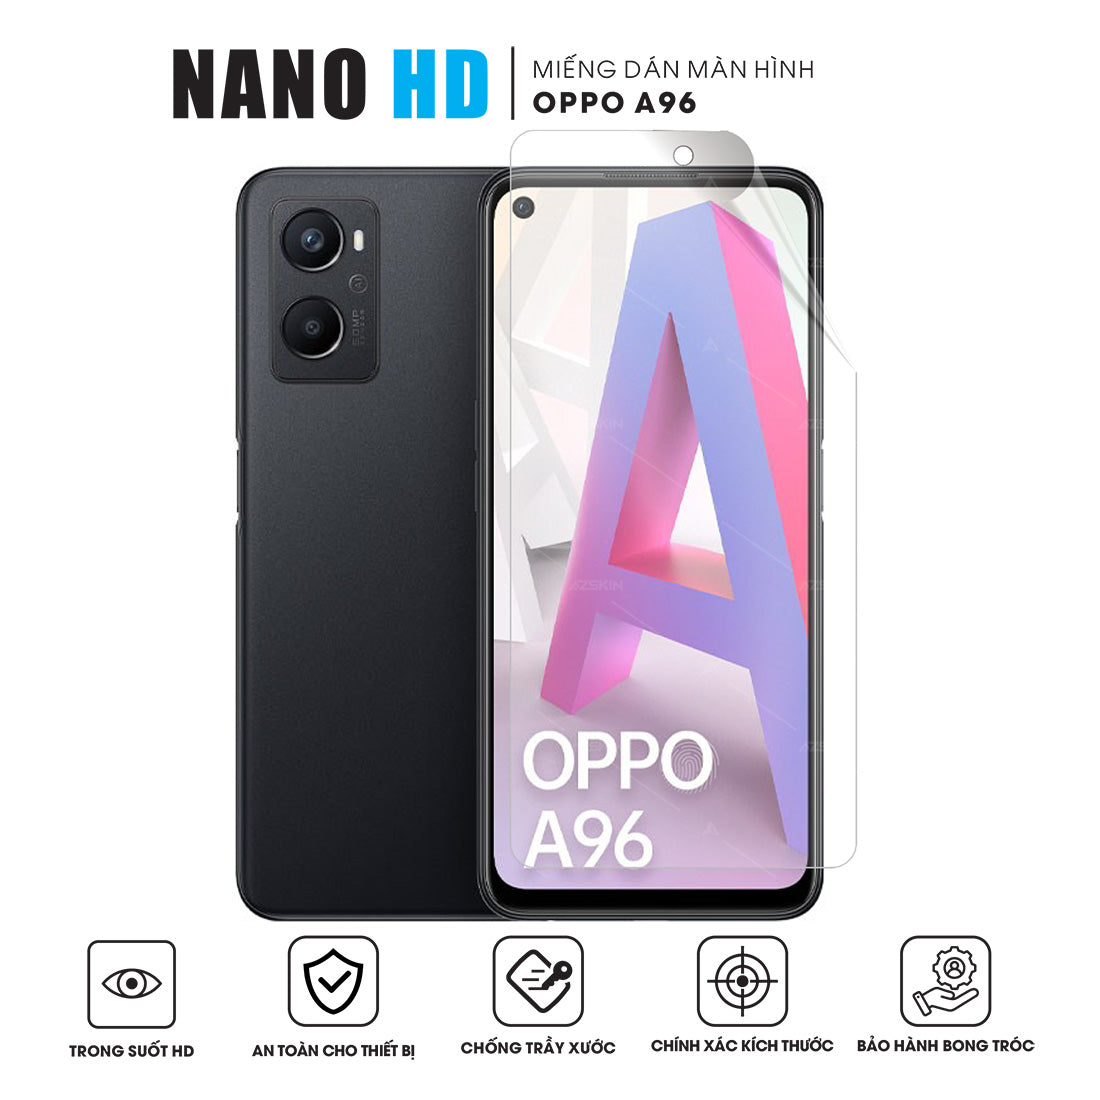 Miếng dán màn hình Nano HD cho OPPO A96 4G 5G